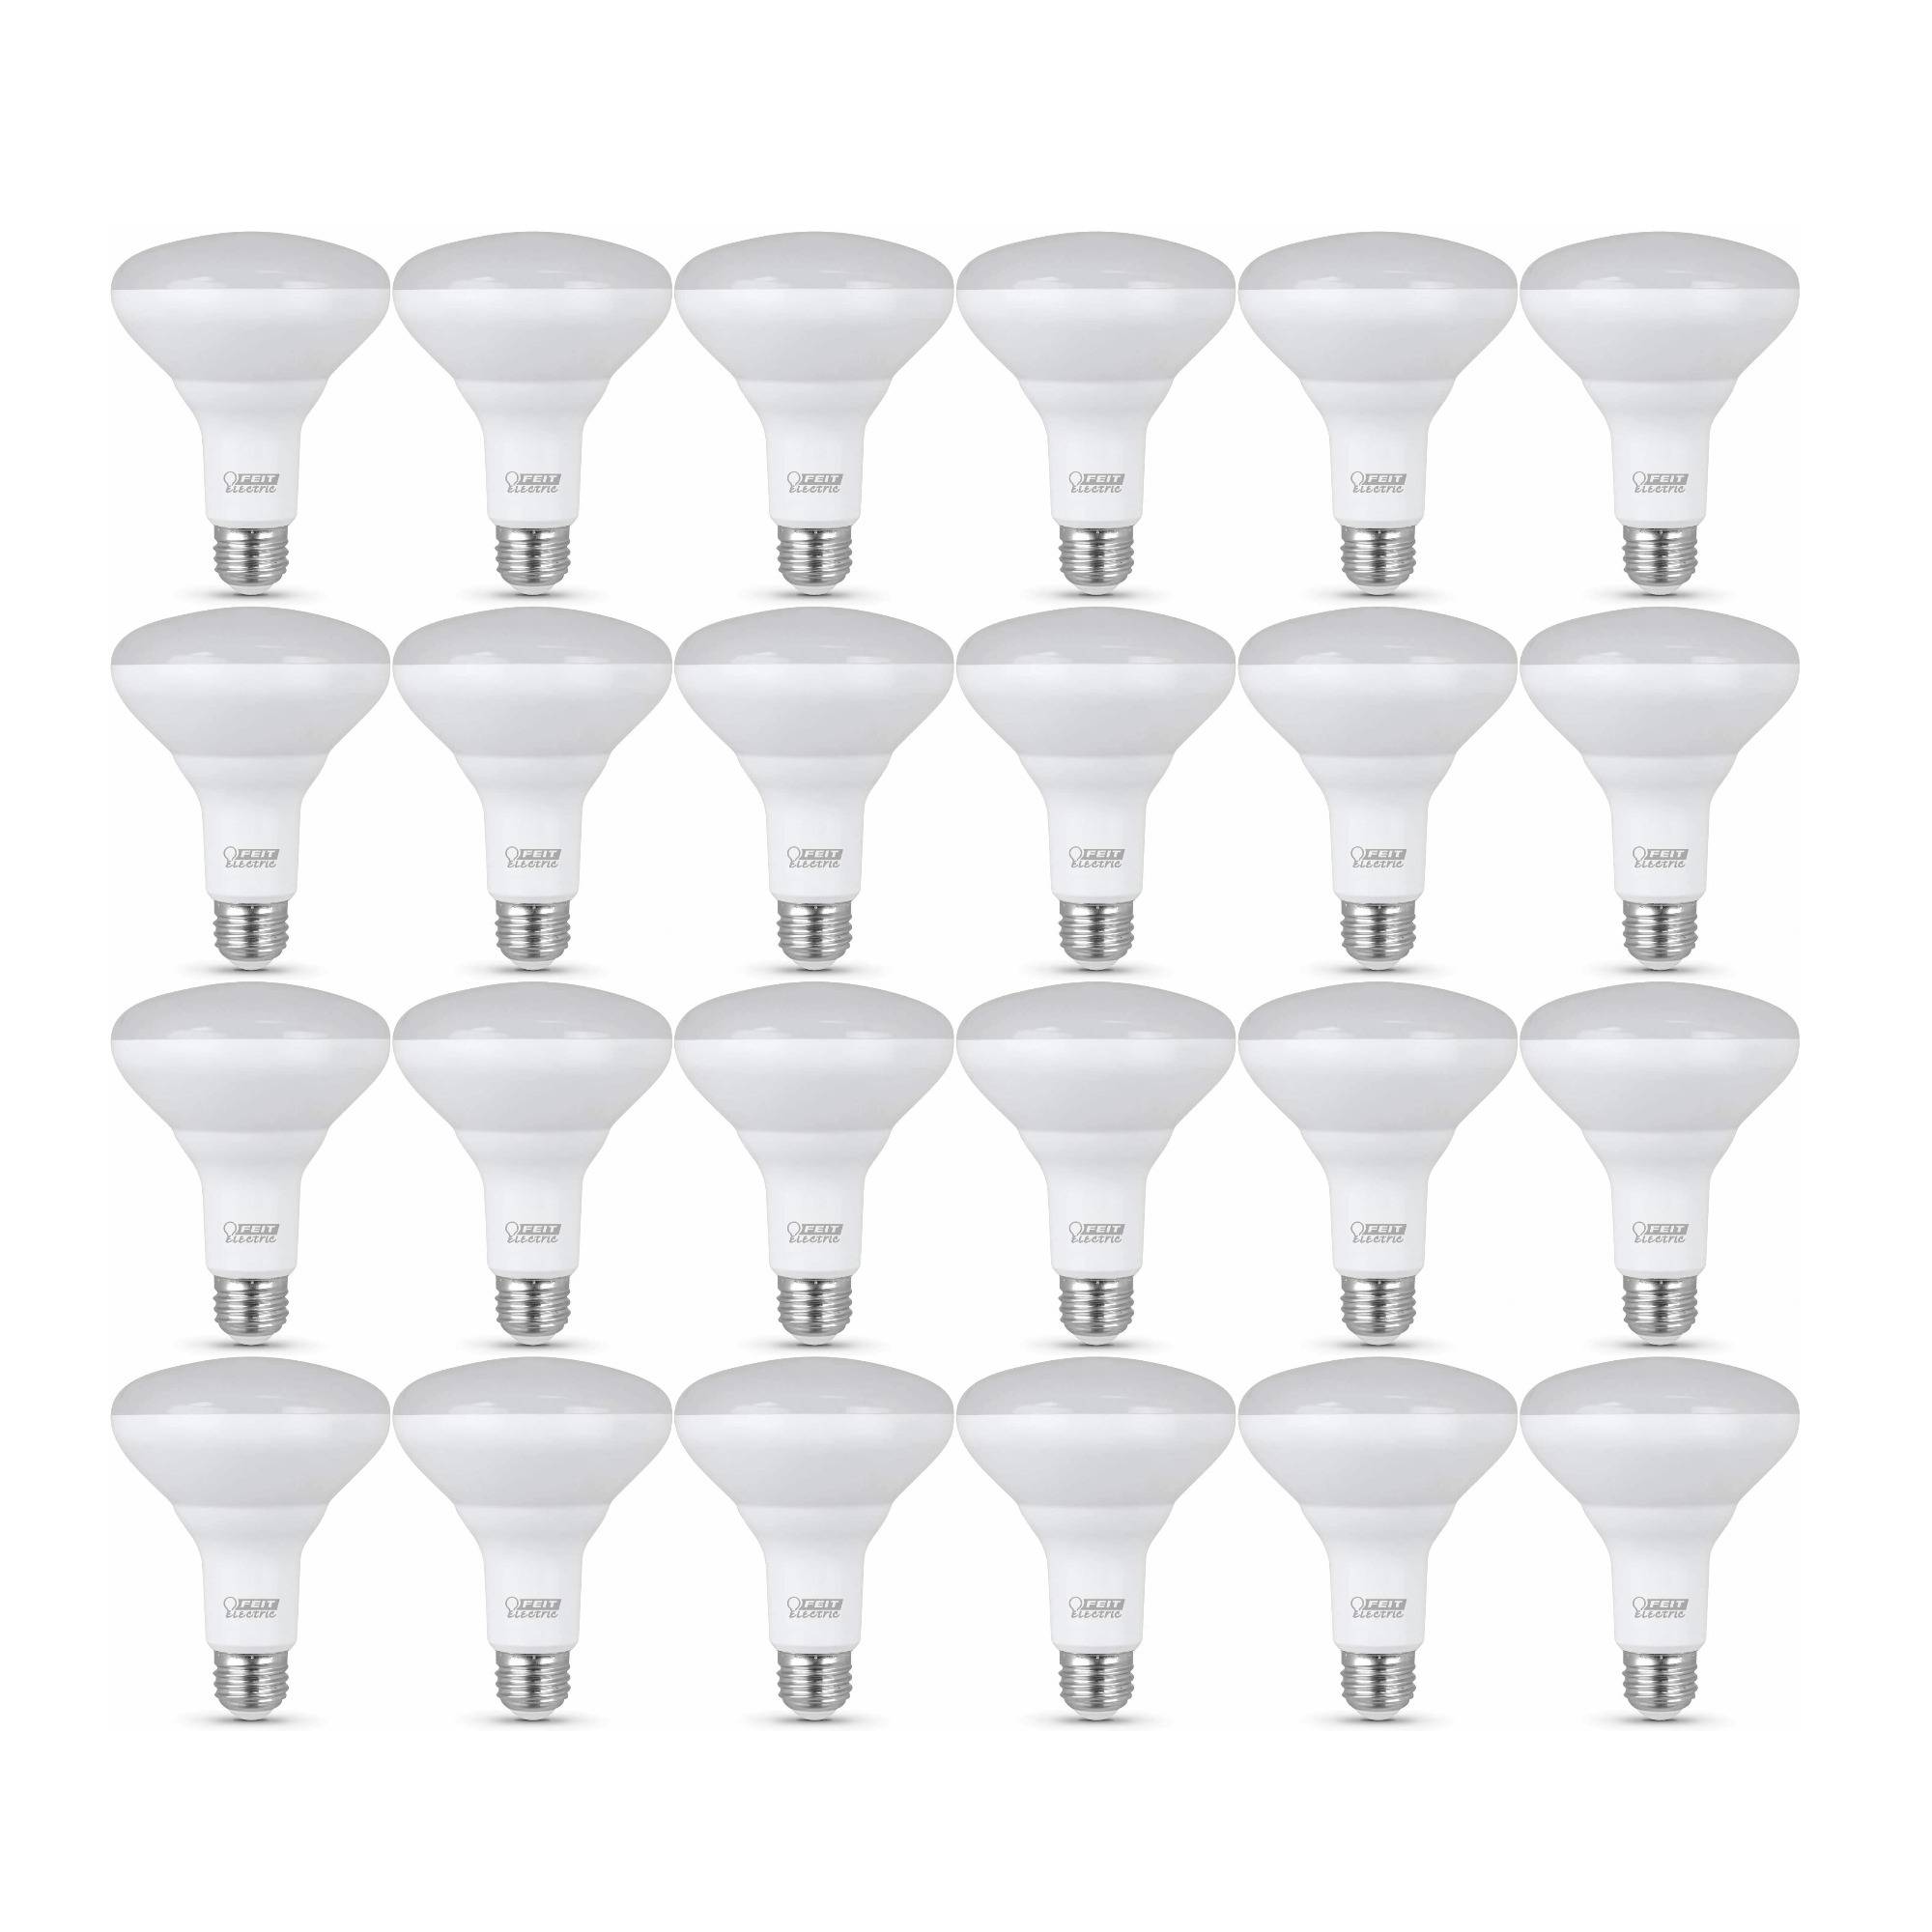 Feit Electric BR30 E26 (Medium) Soft White 65-Watt LED Dimmable Light Bulb (24-Pack)